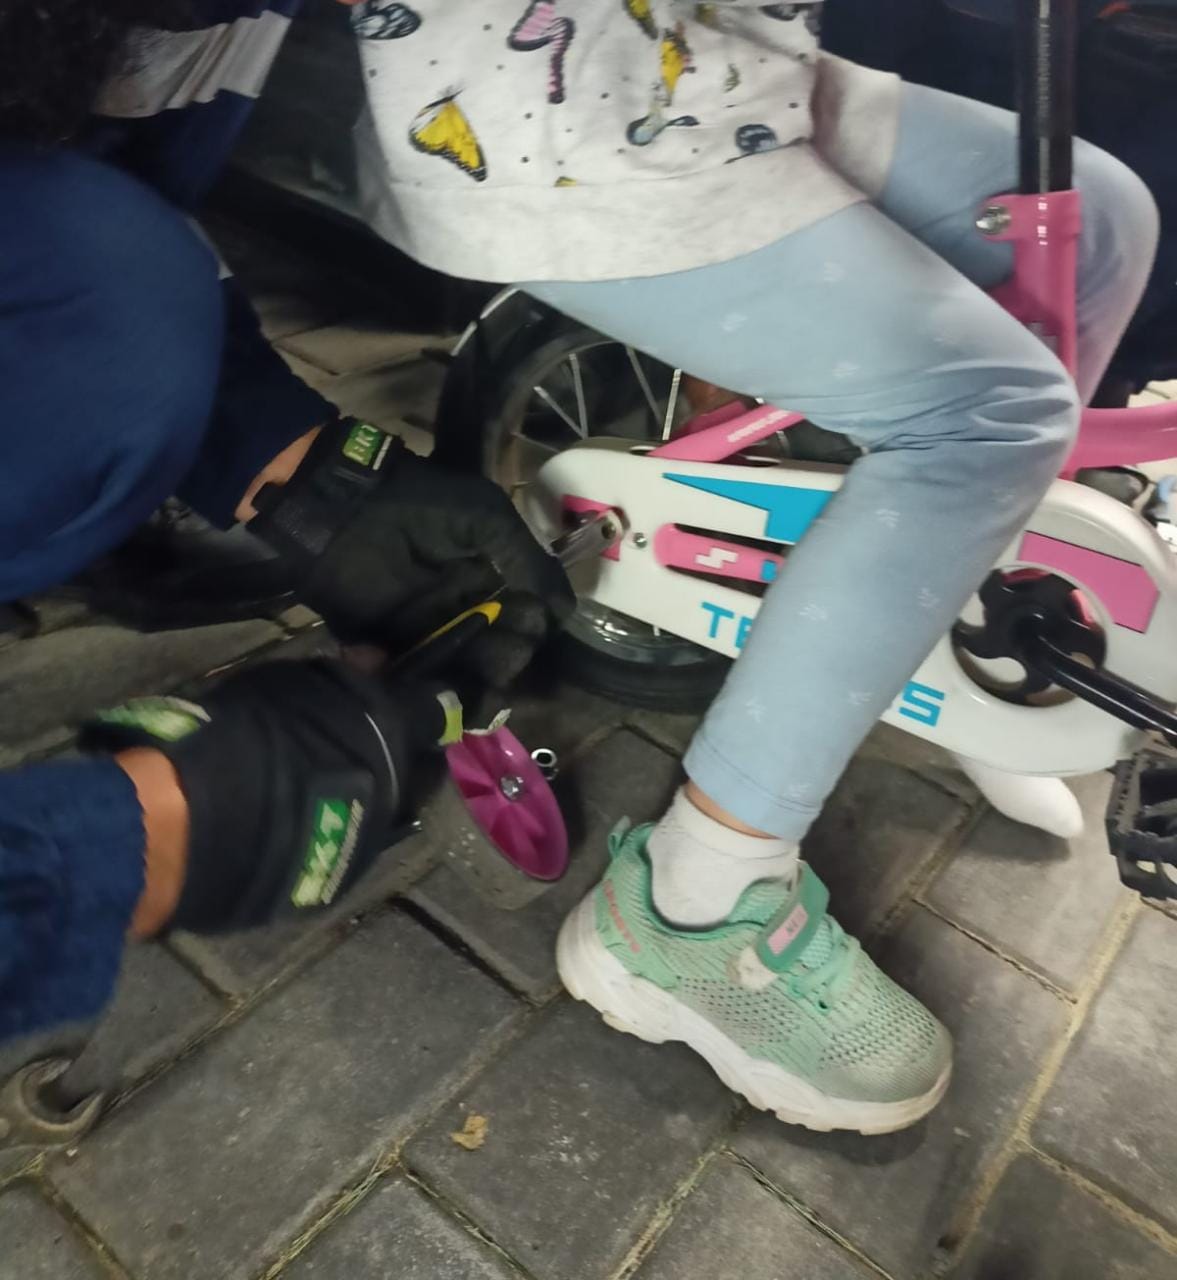 В Казани спасатели помогли 6-летней девочке, у которой нога застряла в велосипеде